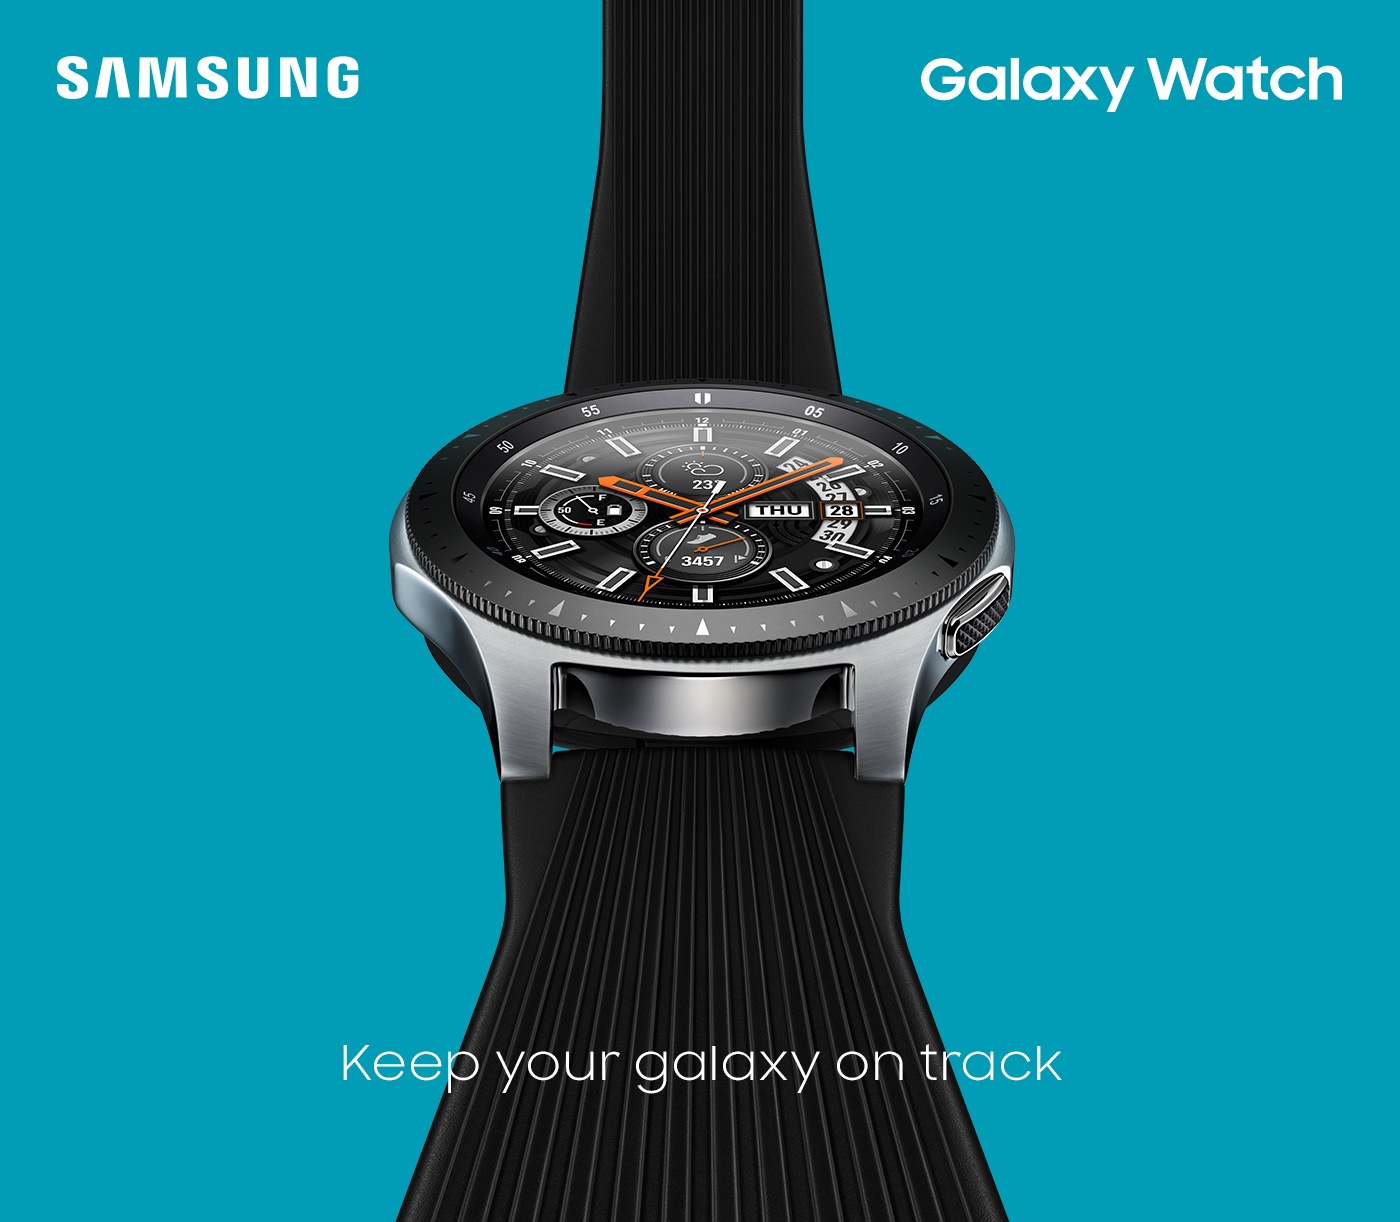 Galaxy Watch : Keep your galaxy on watch